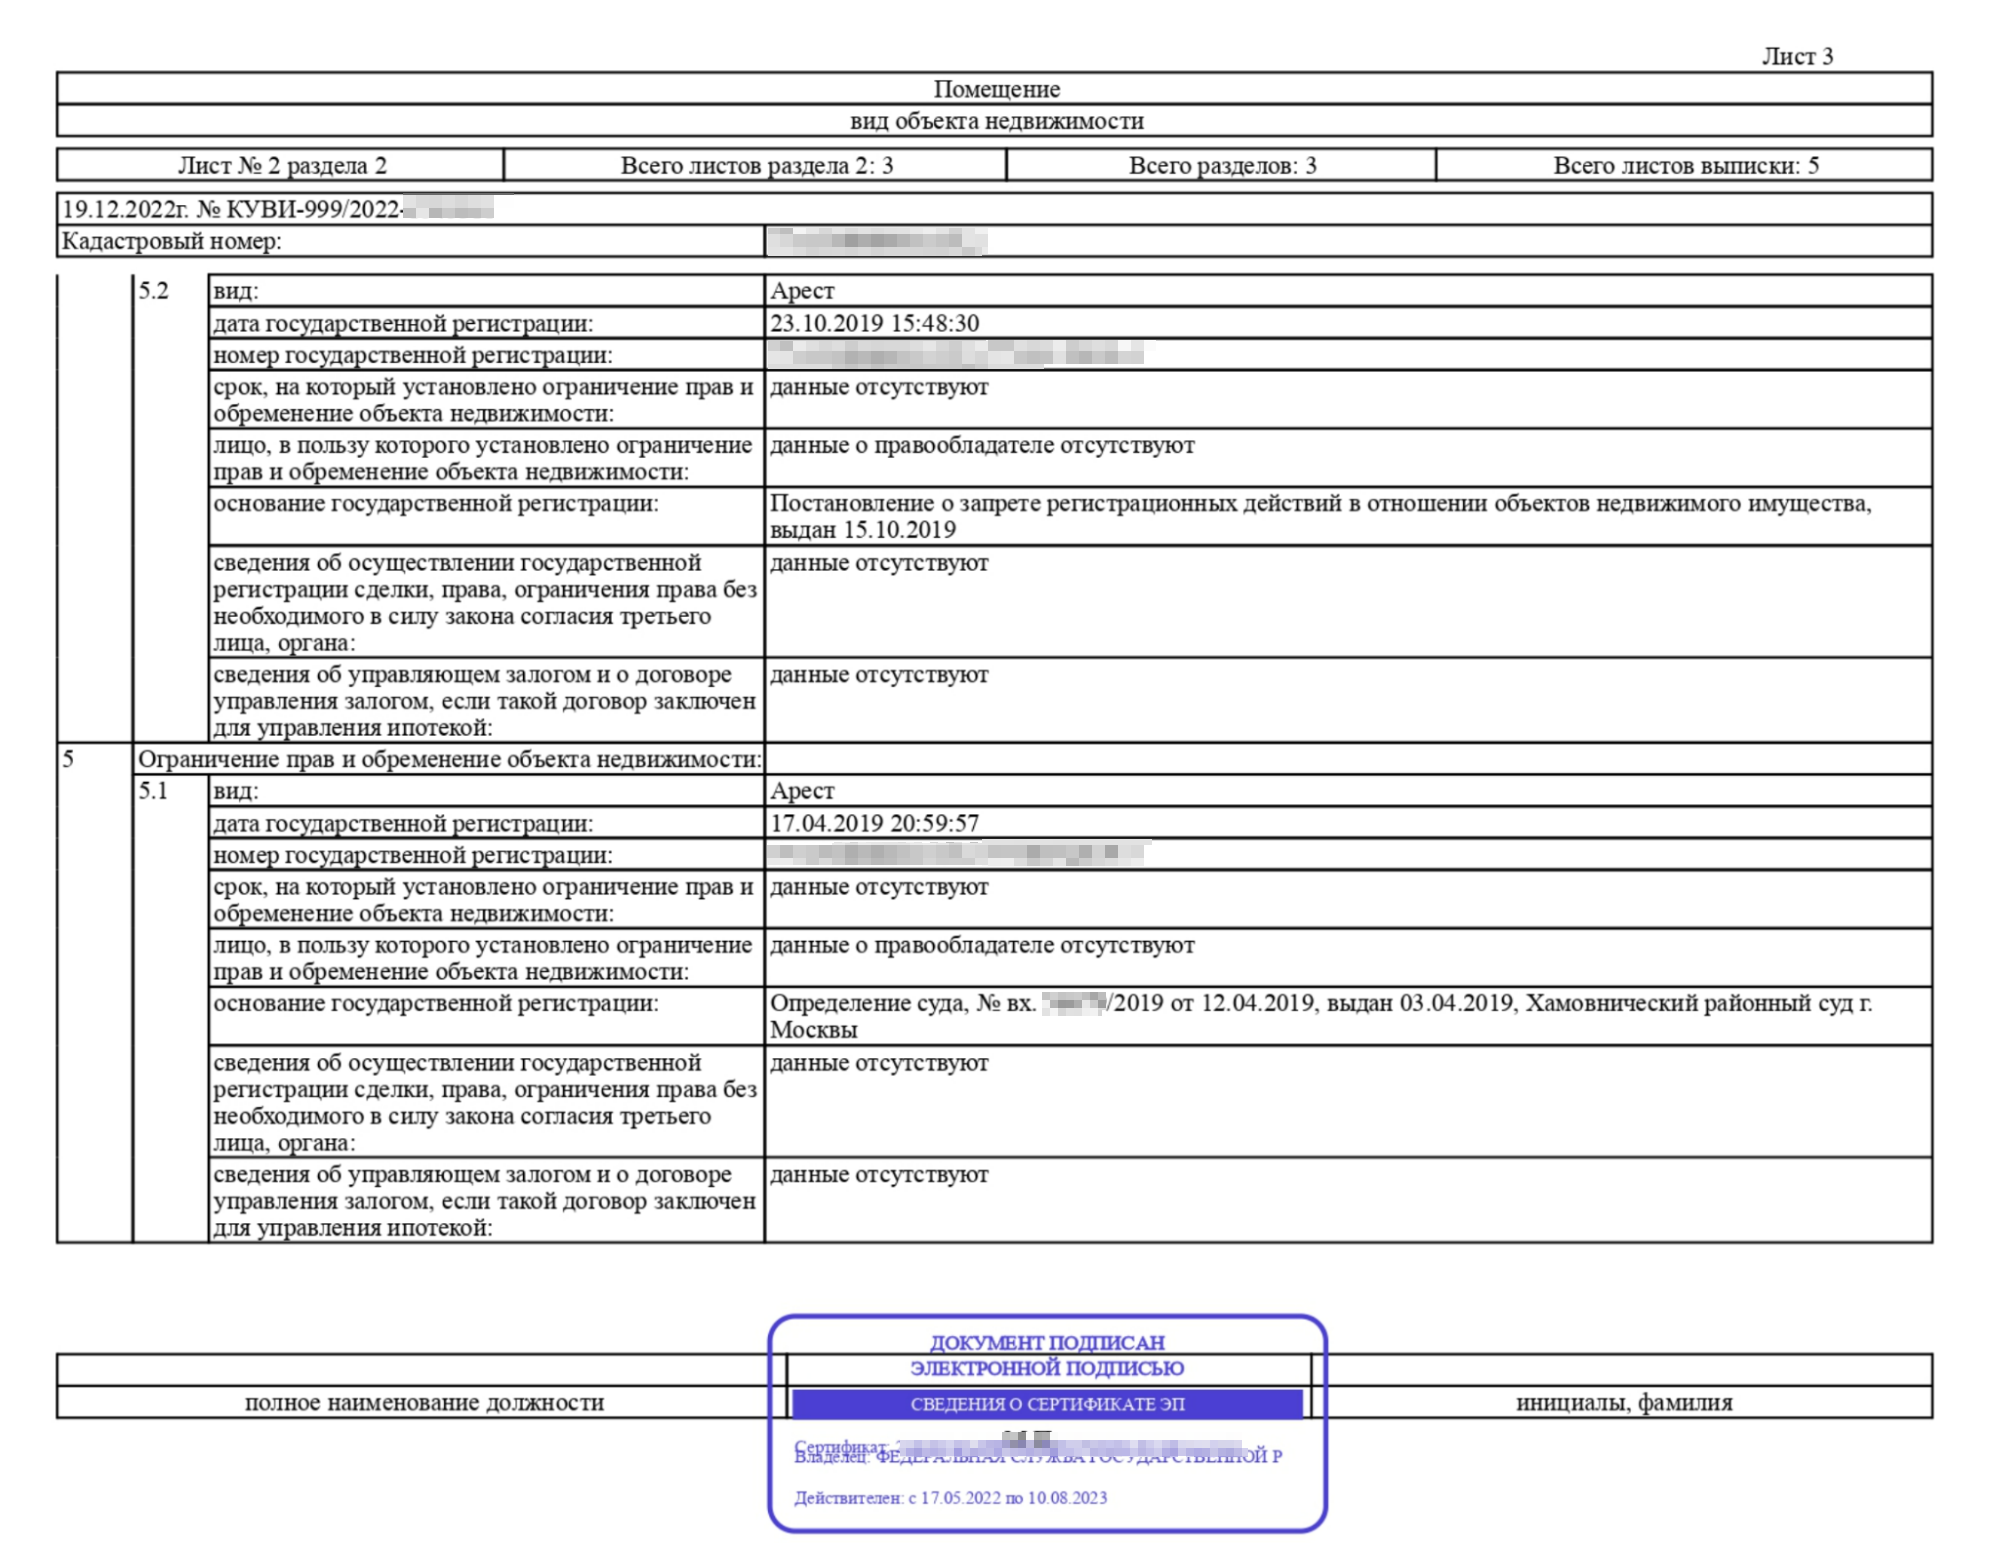 Пример выписки с арестом по гражданскому делу, наложенному Хамовническим районным судом Москвы